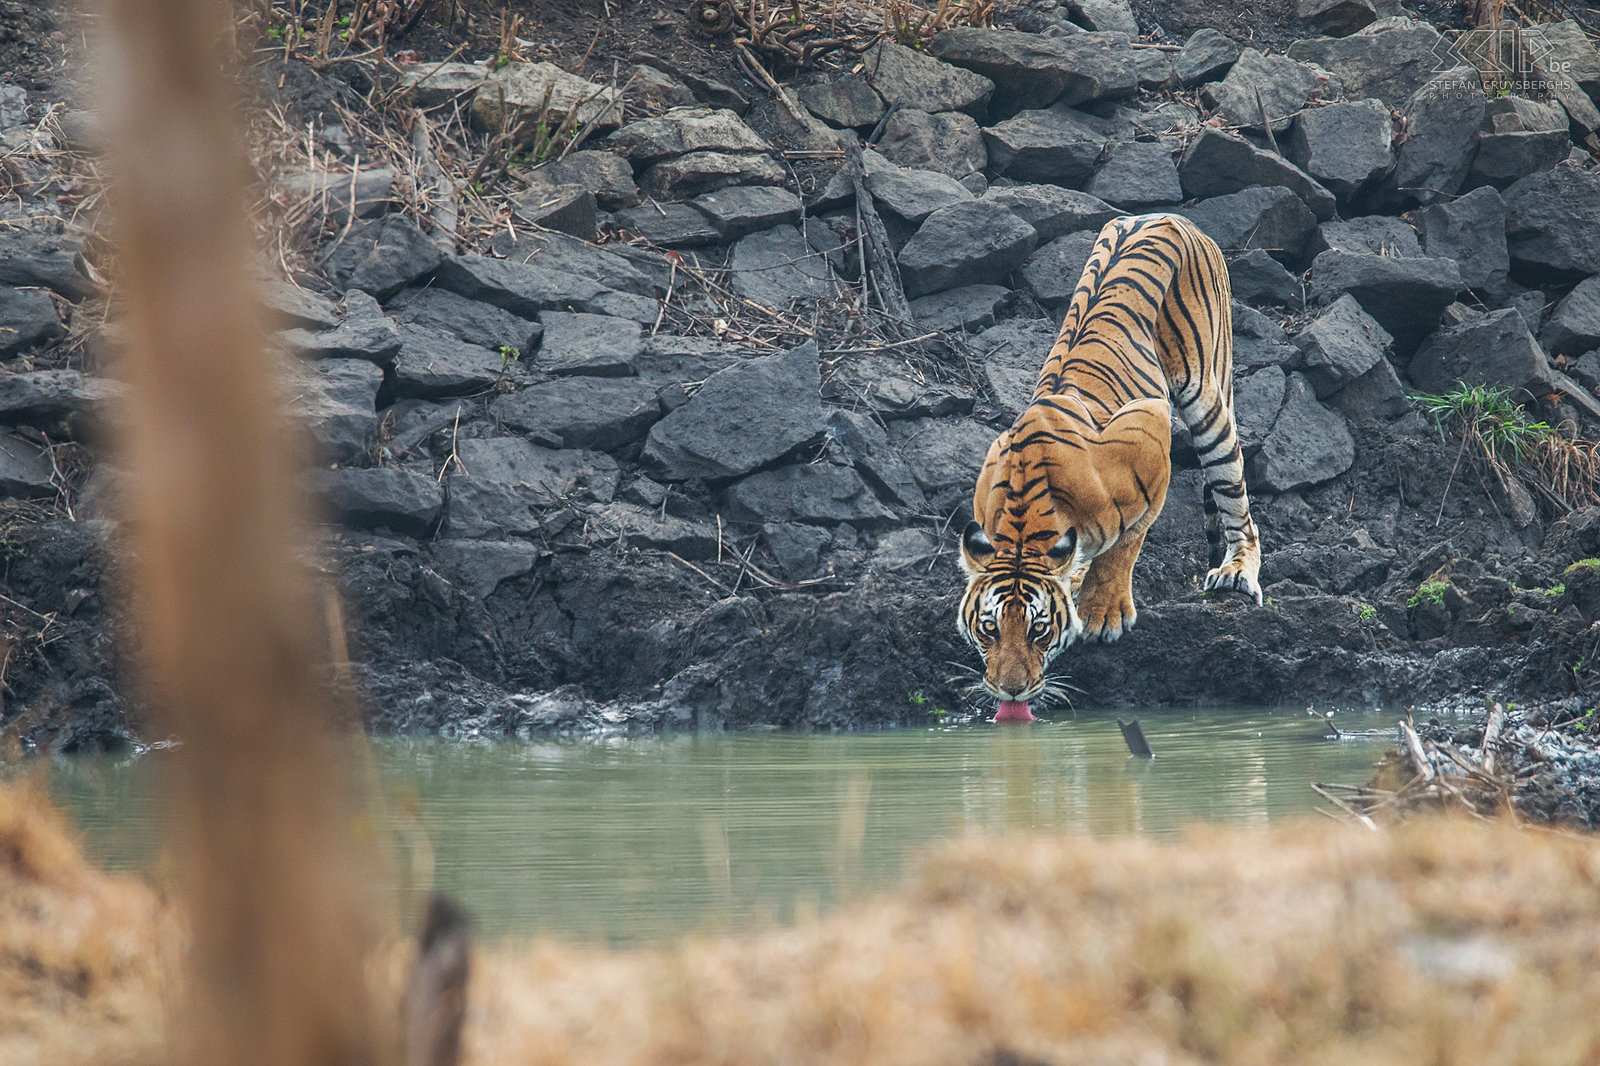 Kabini - 'Tiger tank female' Dit tijgerin kwam naar beneden naar de waterpoel om te drinken en uiteindelijk ging ze in het water liggen om af te koelen. Het is niet eenvoudig om deze prachtige dieren in het wild te zien. De Kabini regio in Nagarhole nationaal park is waarschijnlijk een van de beste plaatsen in het zuiden van India om een tijger te zien. Stefan Cruysberghs